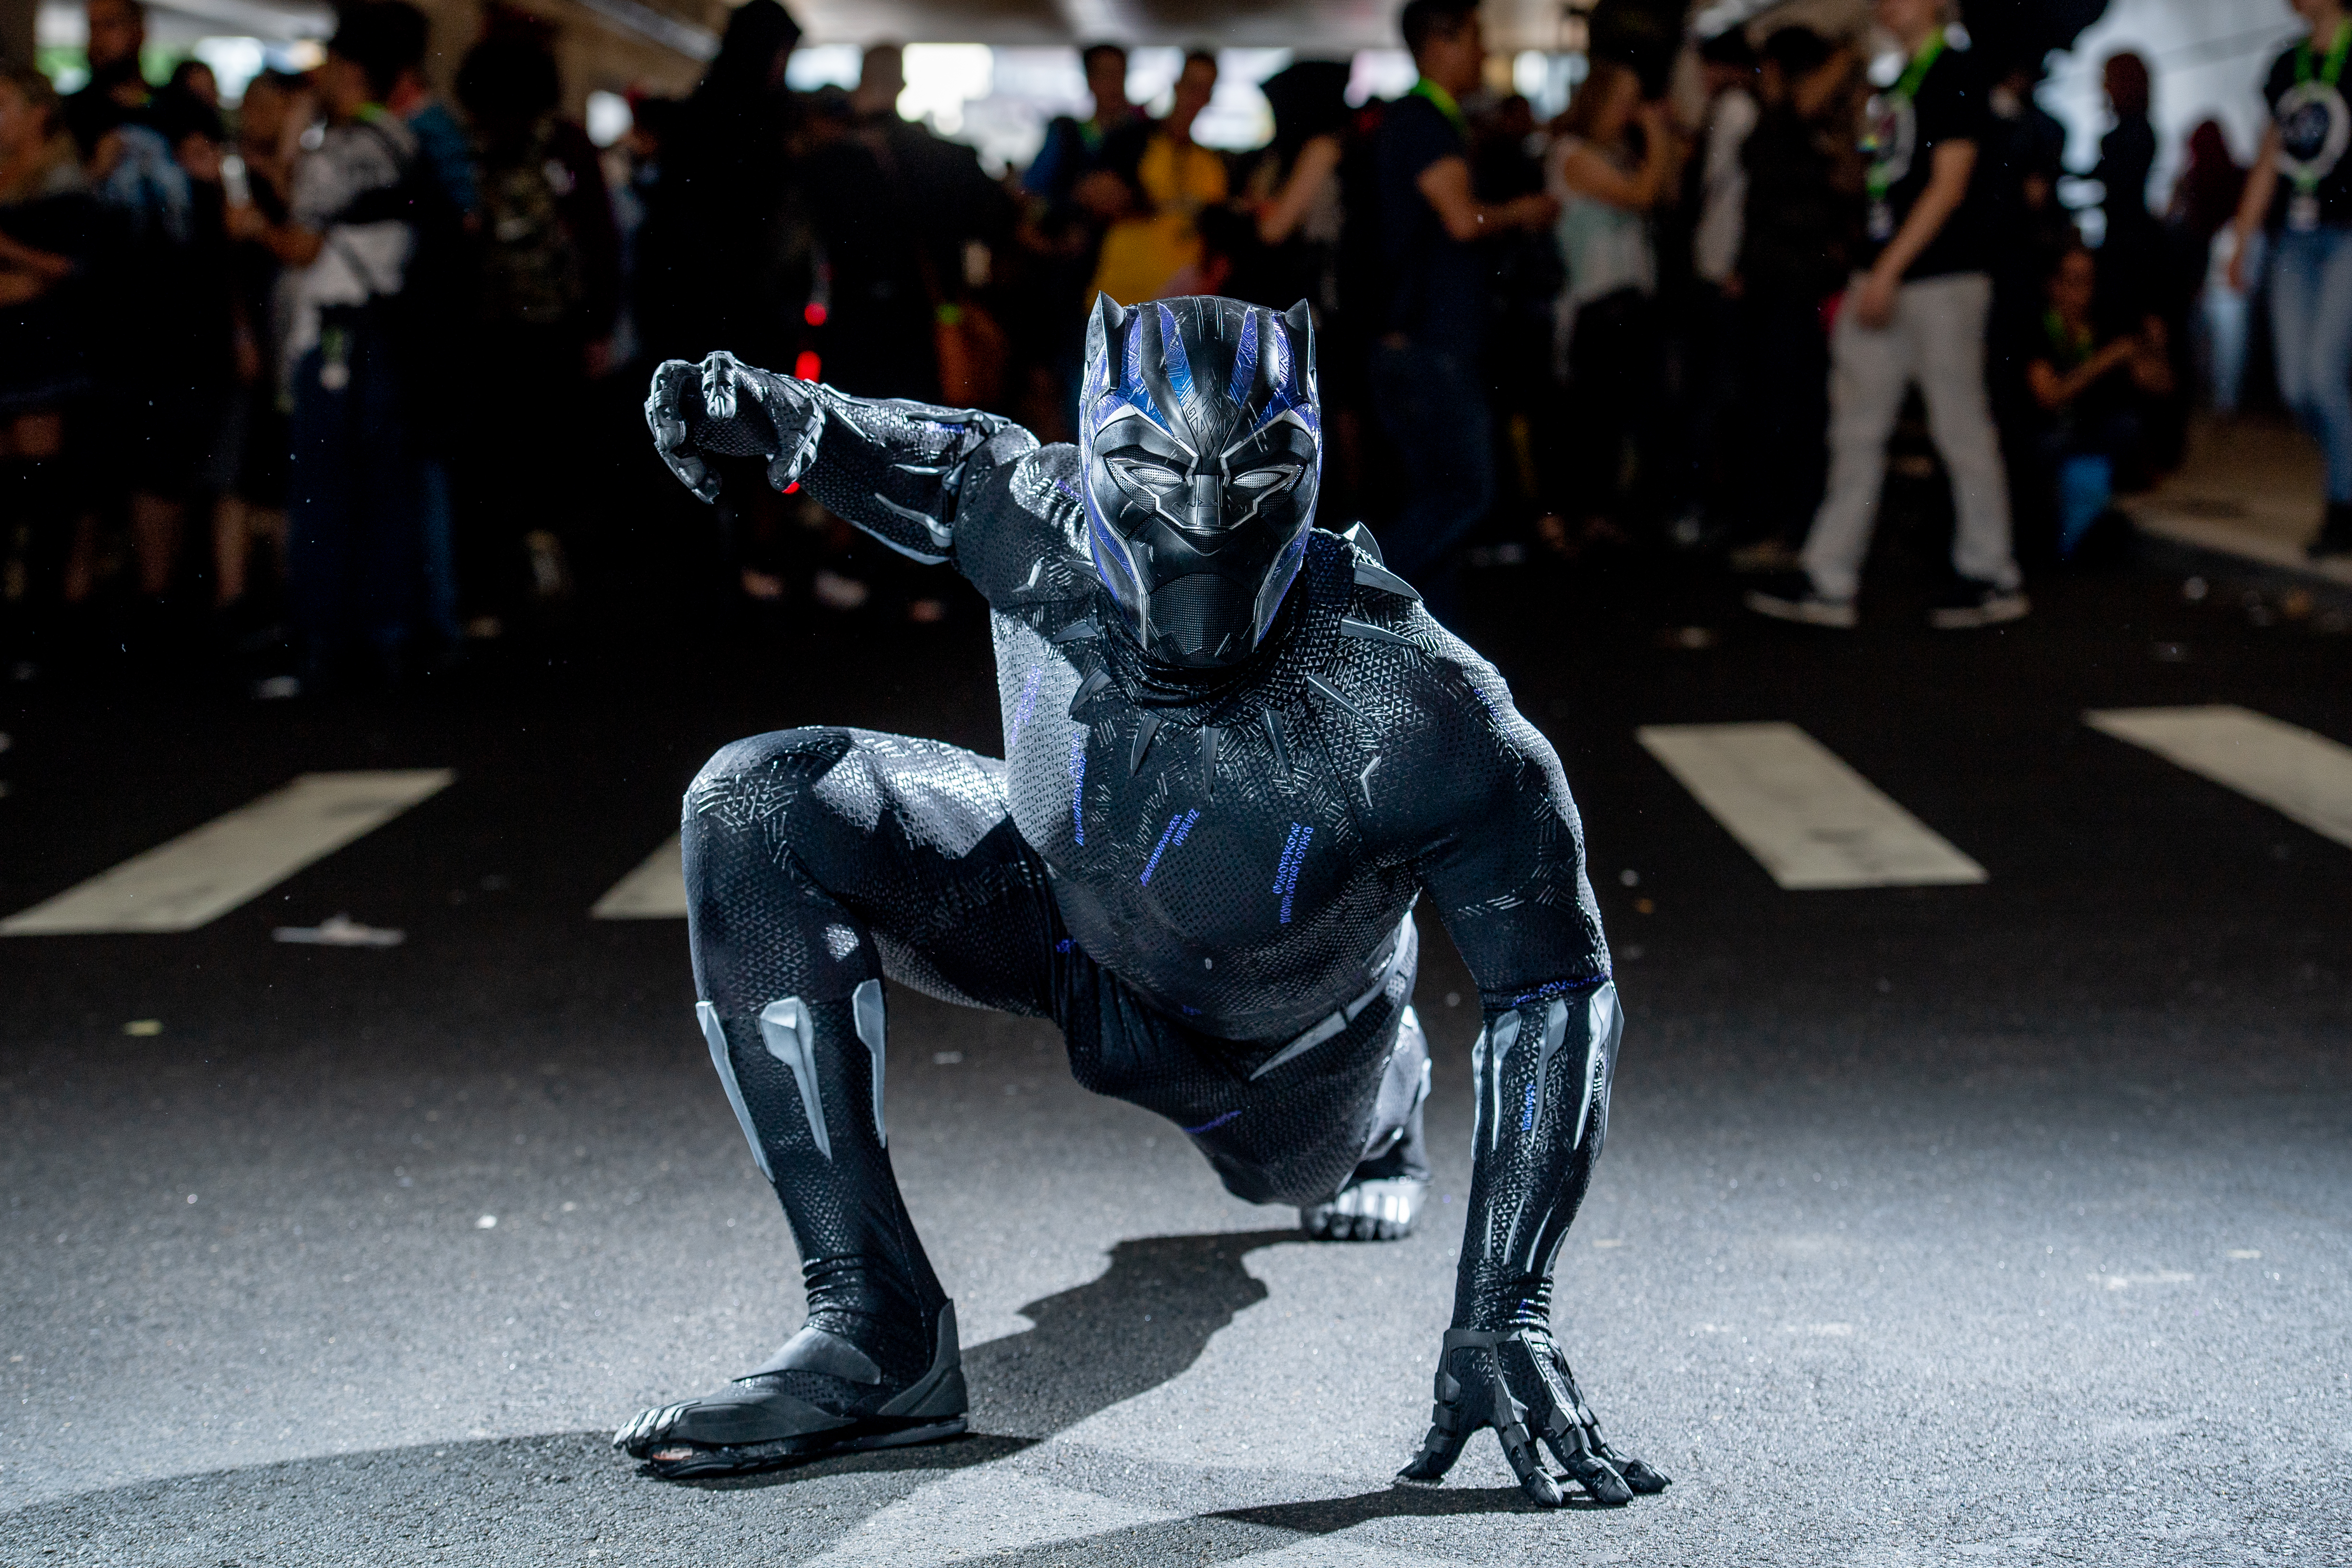 Marvel Studios' Secret Black Panther Rule Revealed by Ryan Coogler